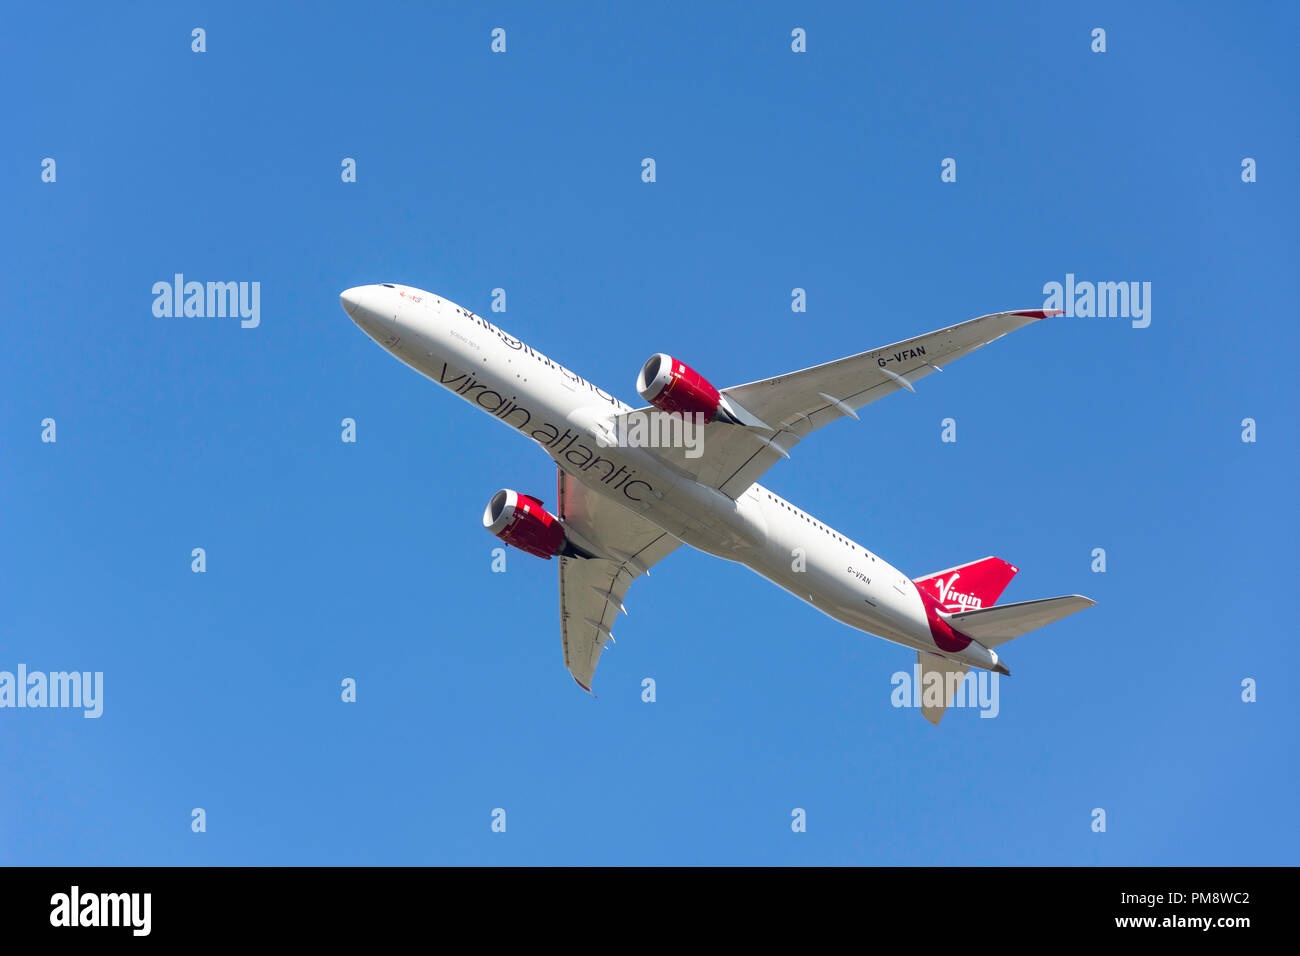 Virgin Atlantic Boeing 787-9 Dreamliner avions qui décollent de l'aéroport de Heathrow, Londres, Angleterre, Royaume-Uni Banque D'Images